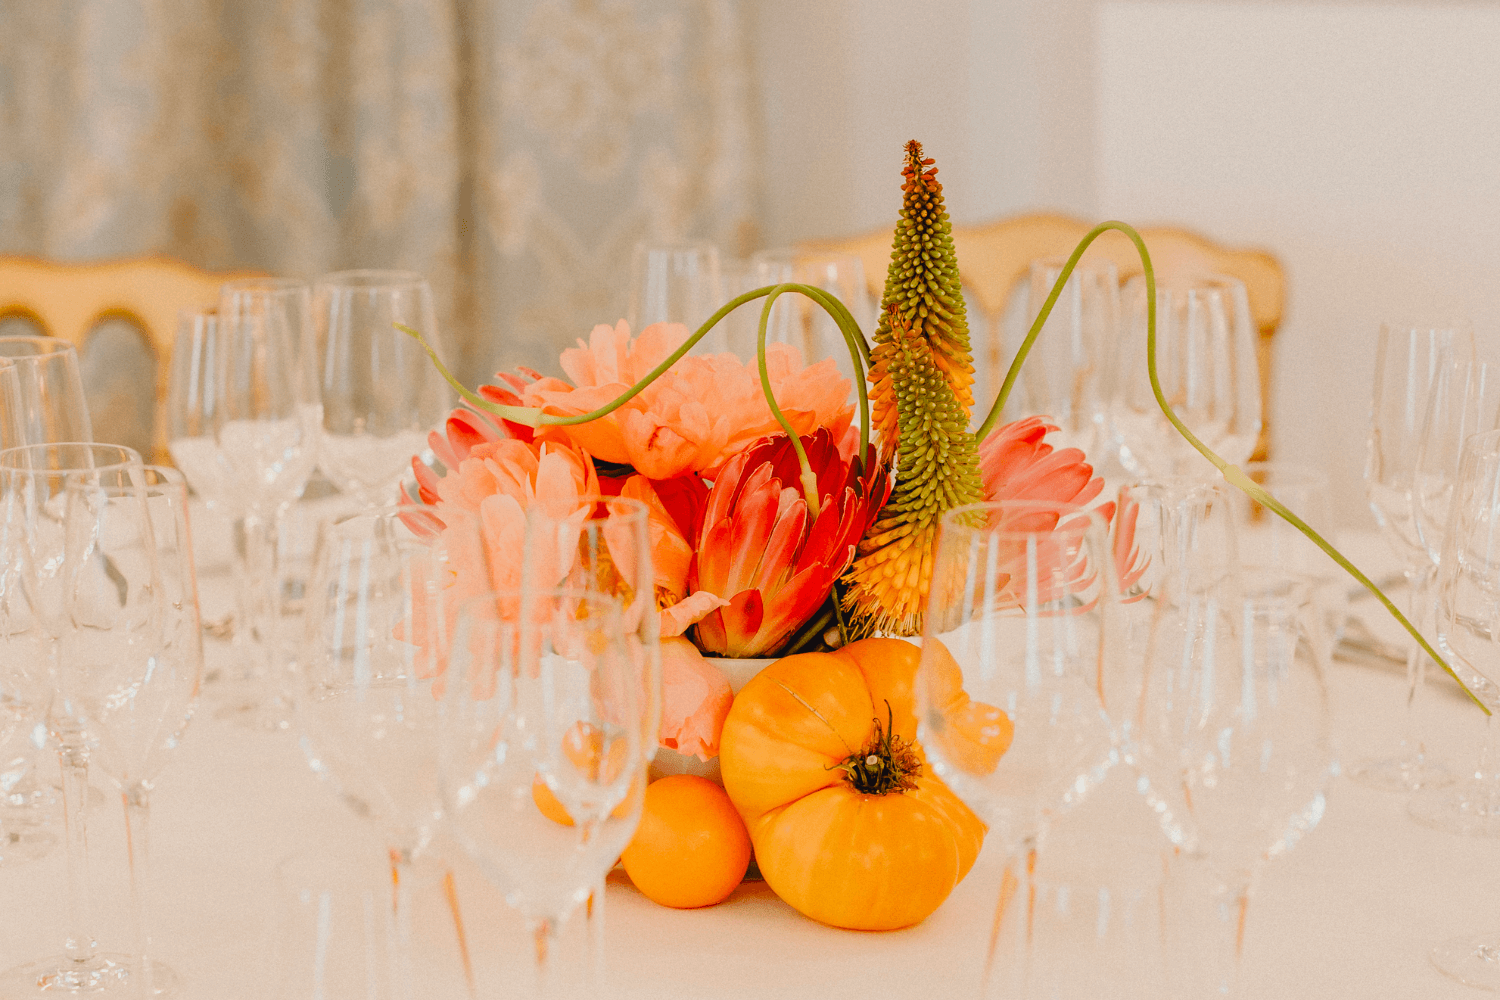 Un récipient contenant un mélange de fruits et de fleurs exotiques posé sur une table de mariage.